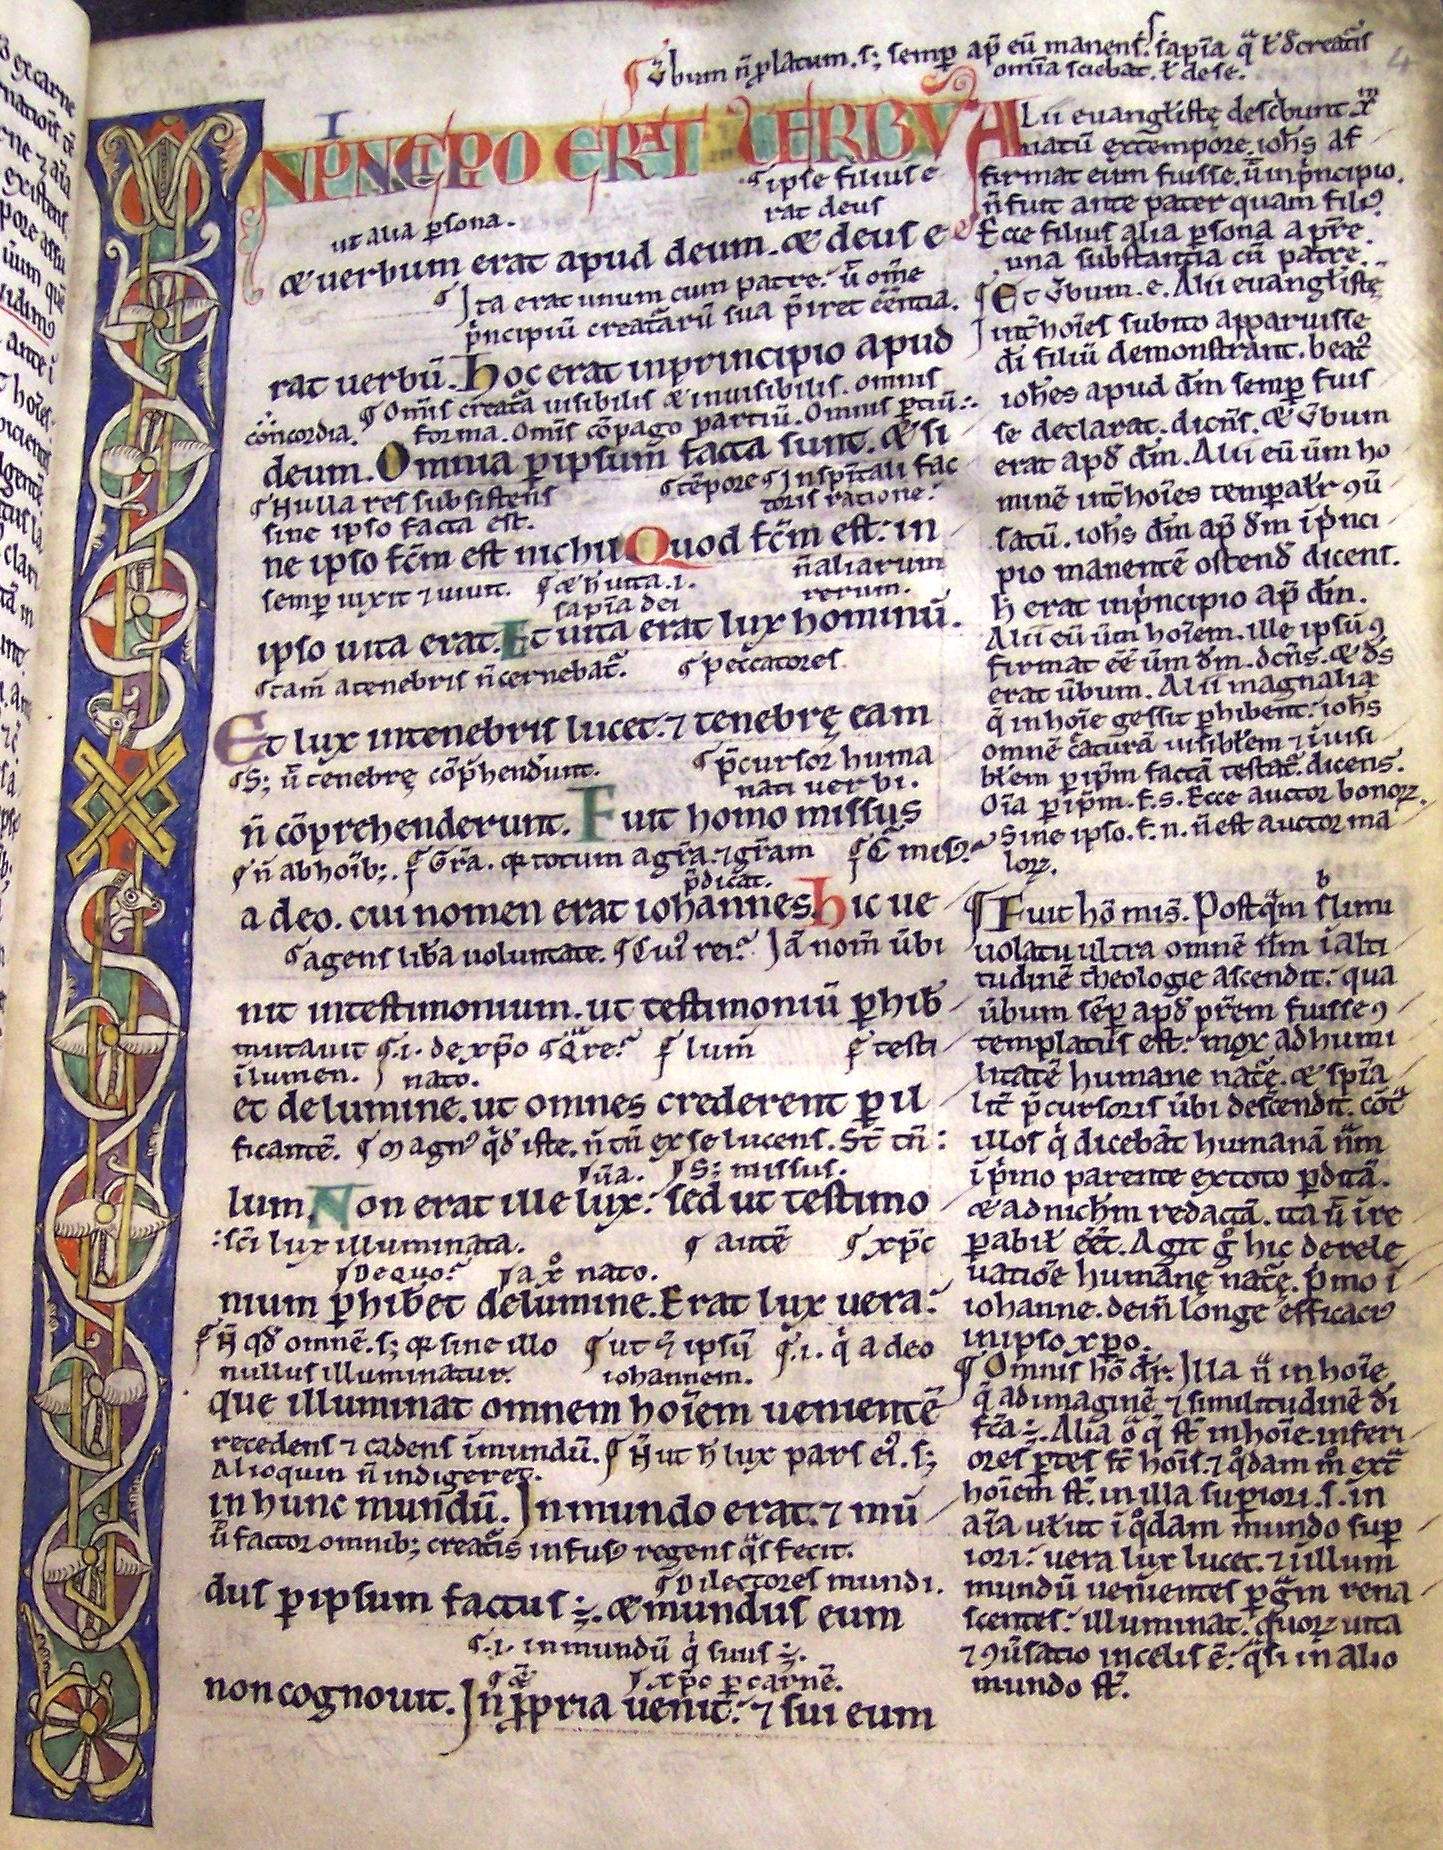 MS 54, f4r, Glossary on the Gospel of St. John, 12thC